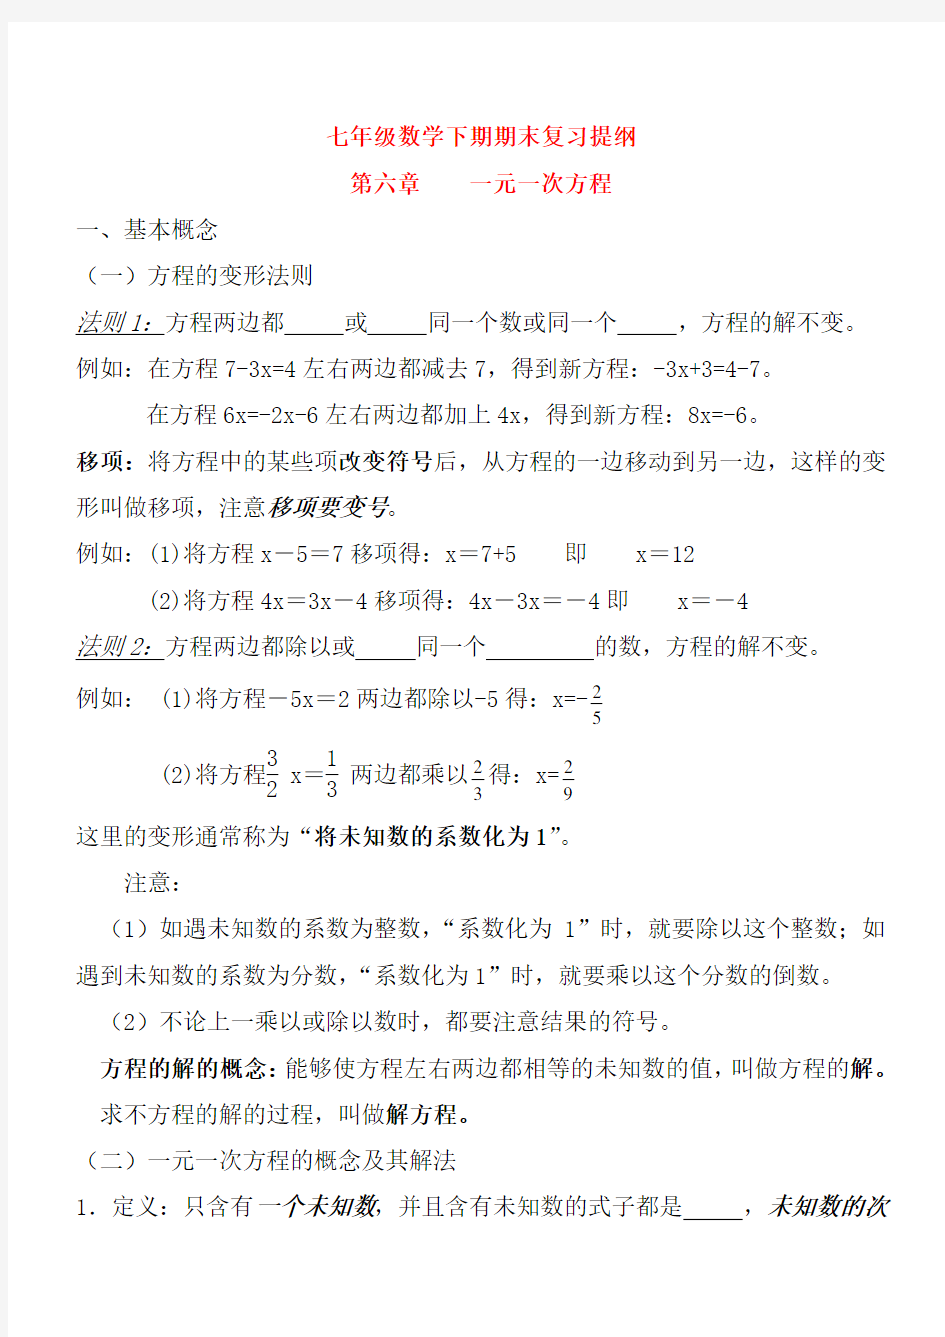 完整word版,华东师范大学出版社七年级下册数学知识点总结